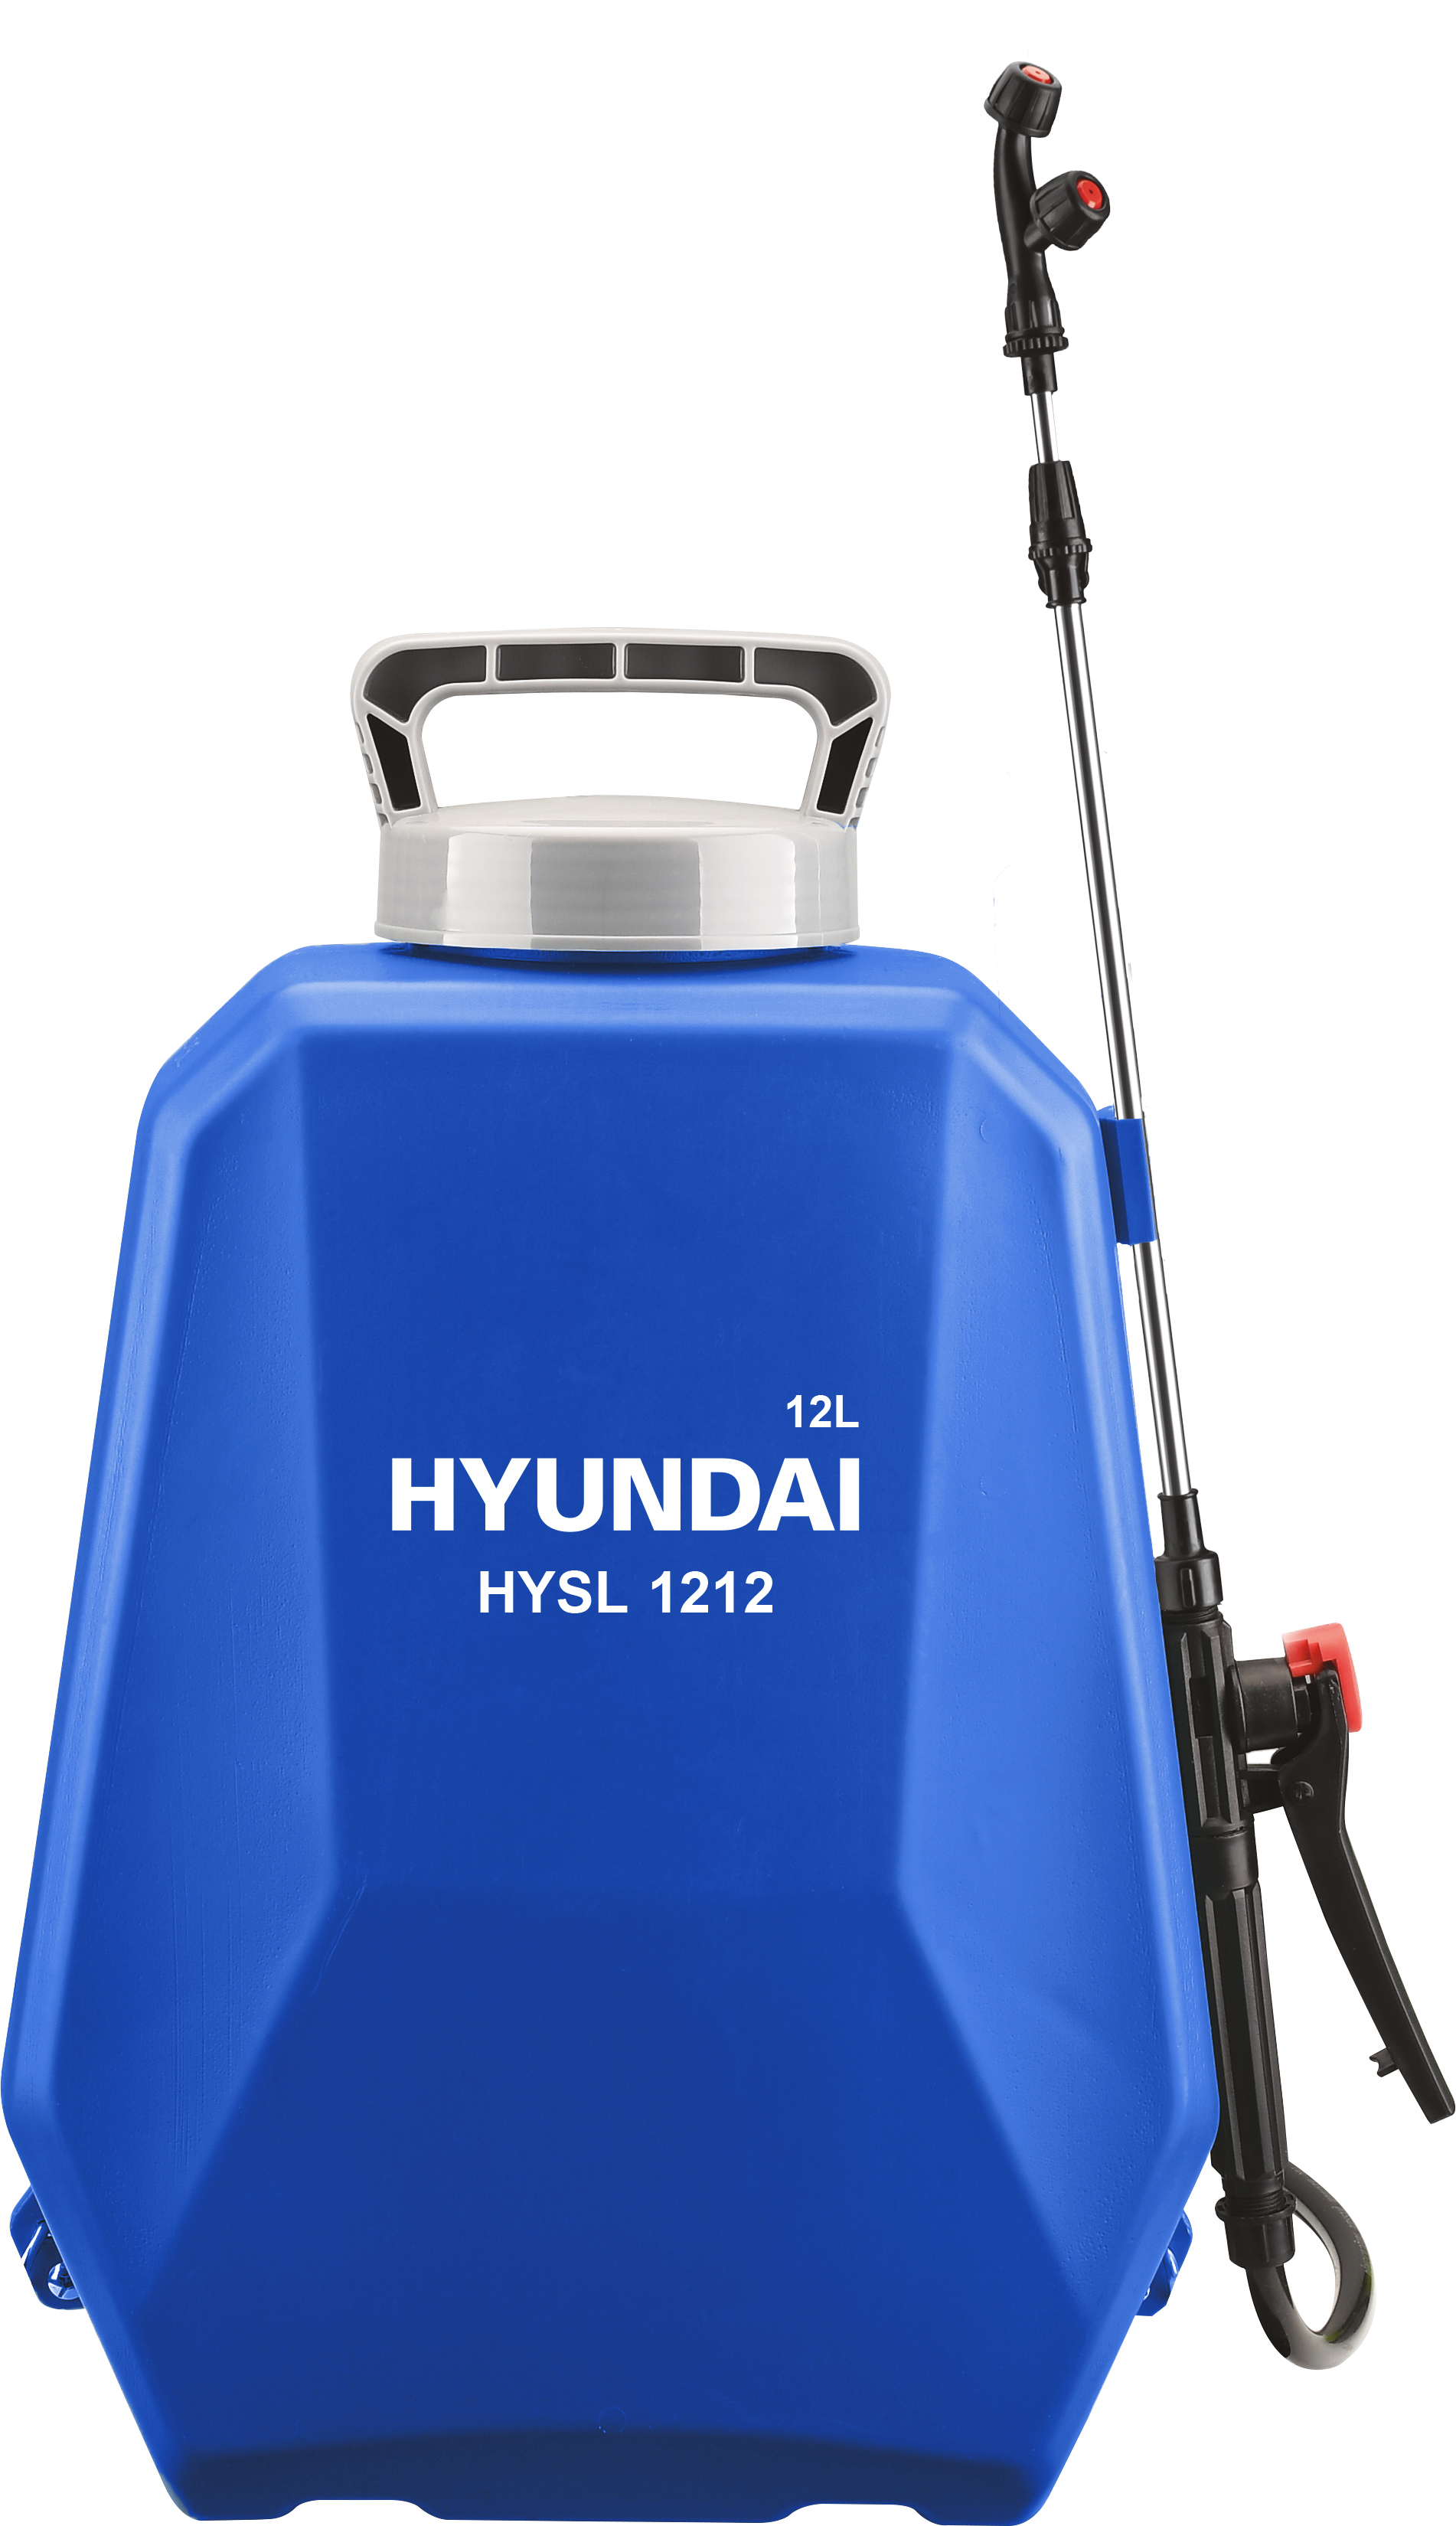 Аккумуляторный опрыскиватель Hyundai HYSL 1212 аккумуляторный опрыскиватель hyundai hysp 1612